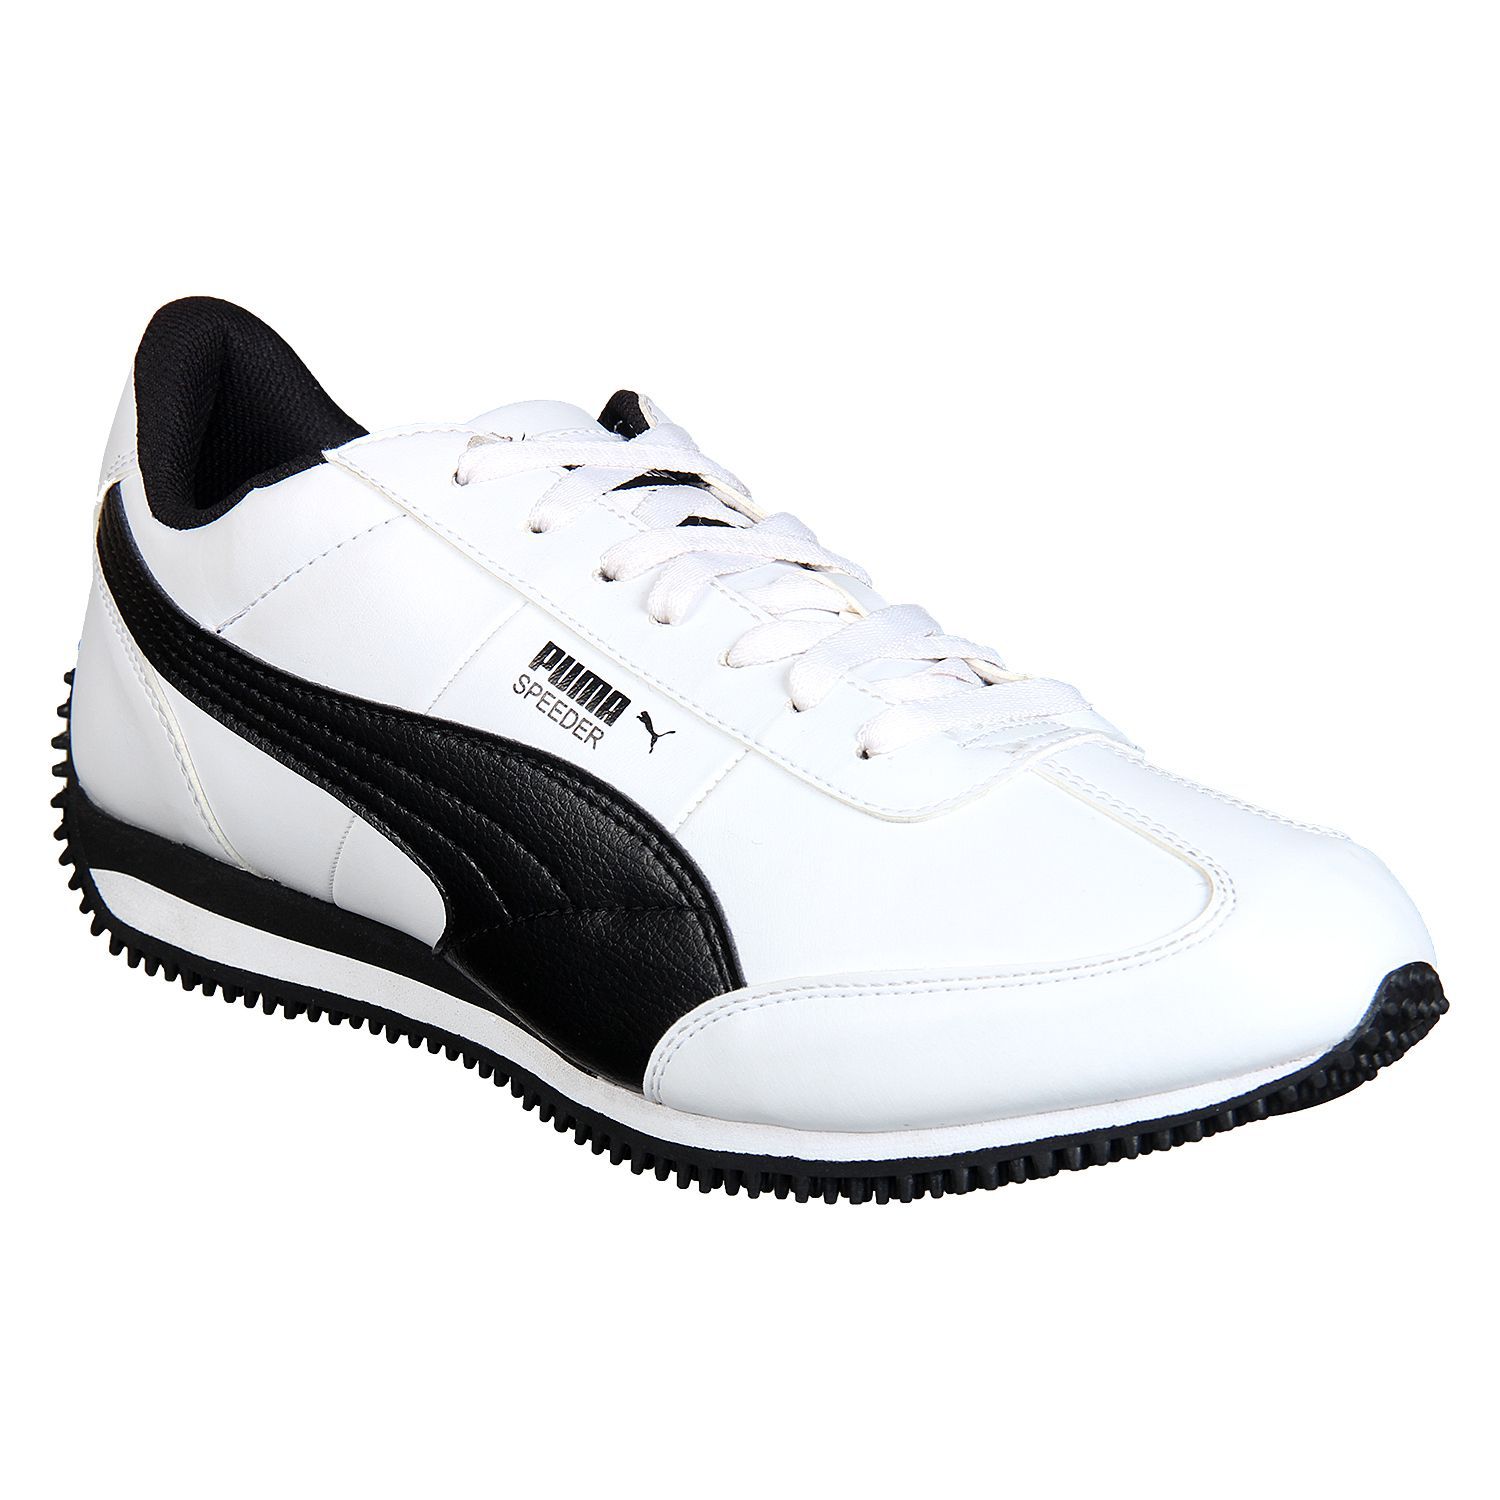 Puma Velocity IDP White Running Shoes - Buy Puma Velocity IDP White ...